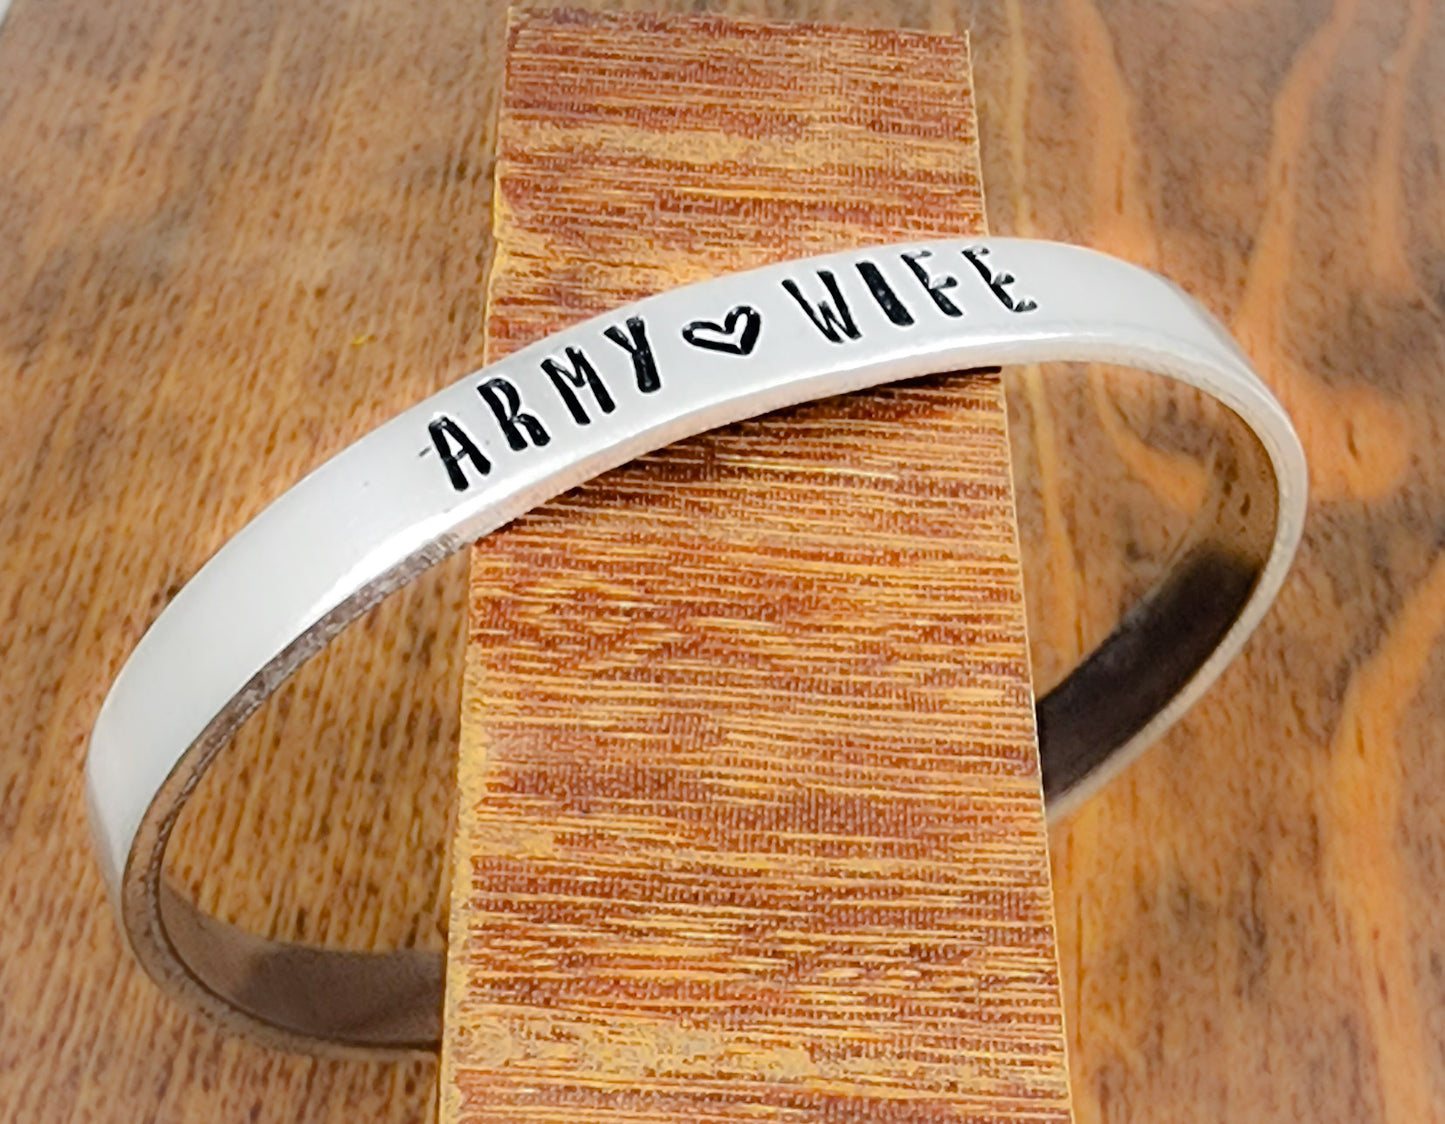 Army Wife Cuff Bracelet